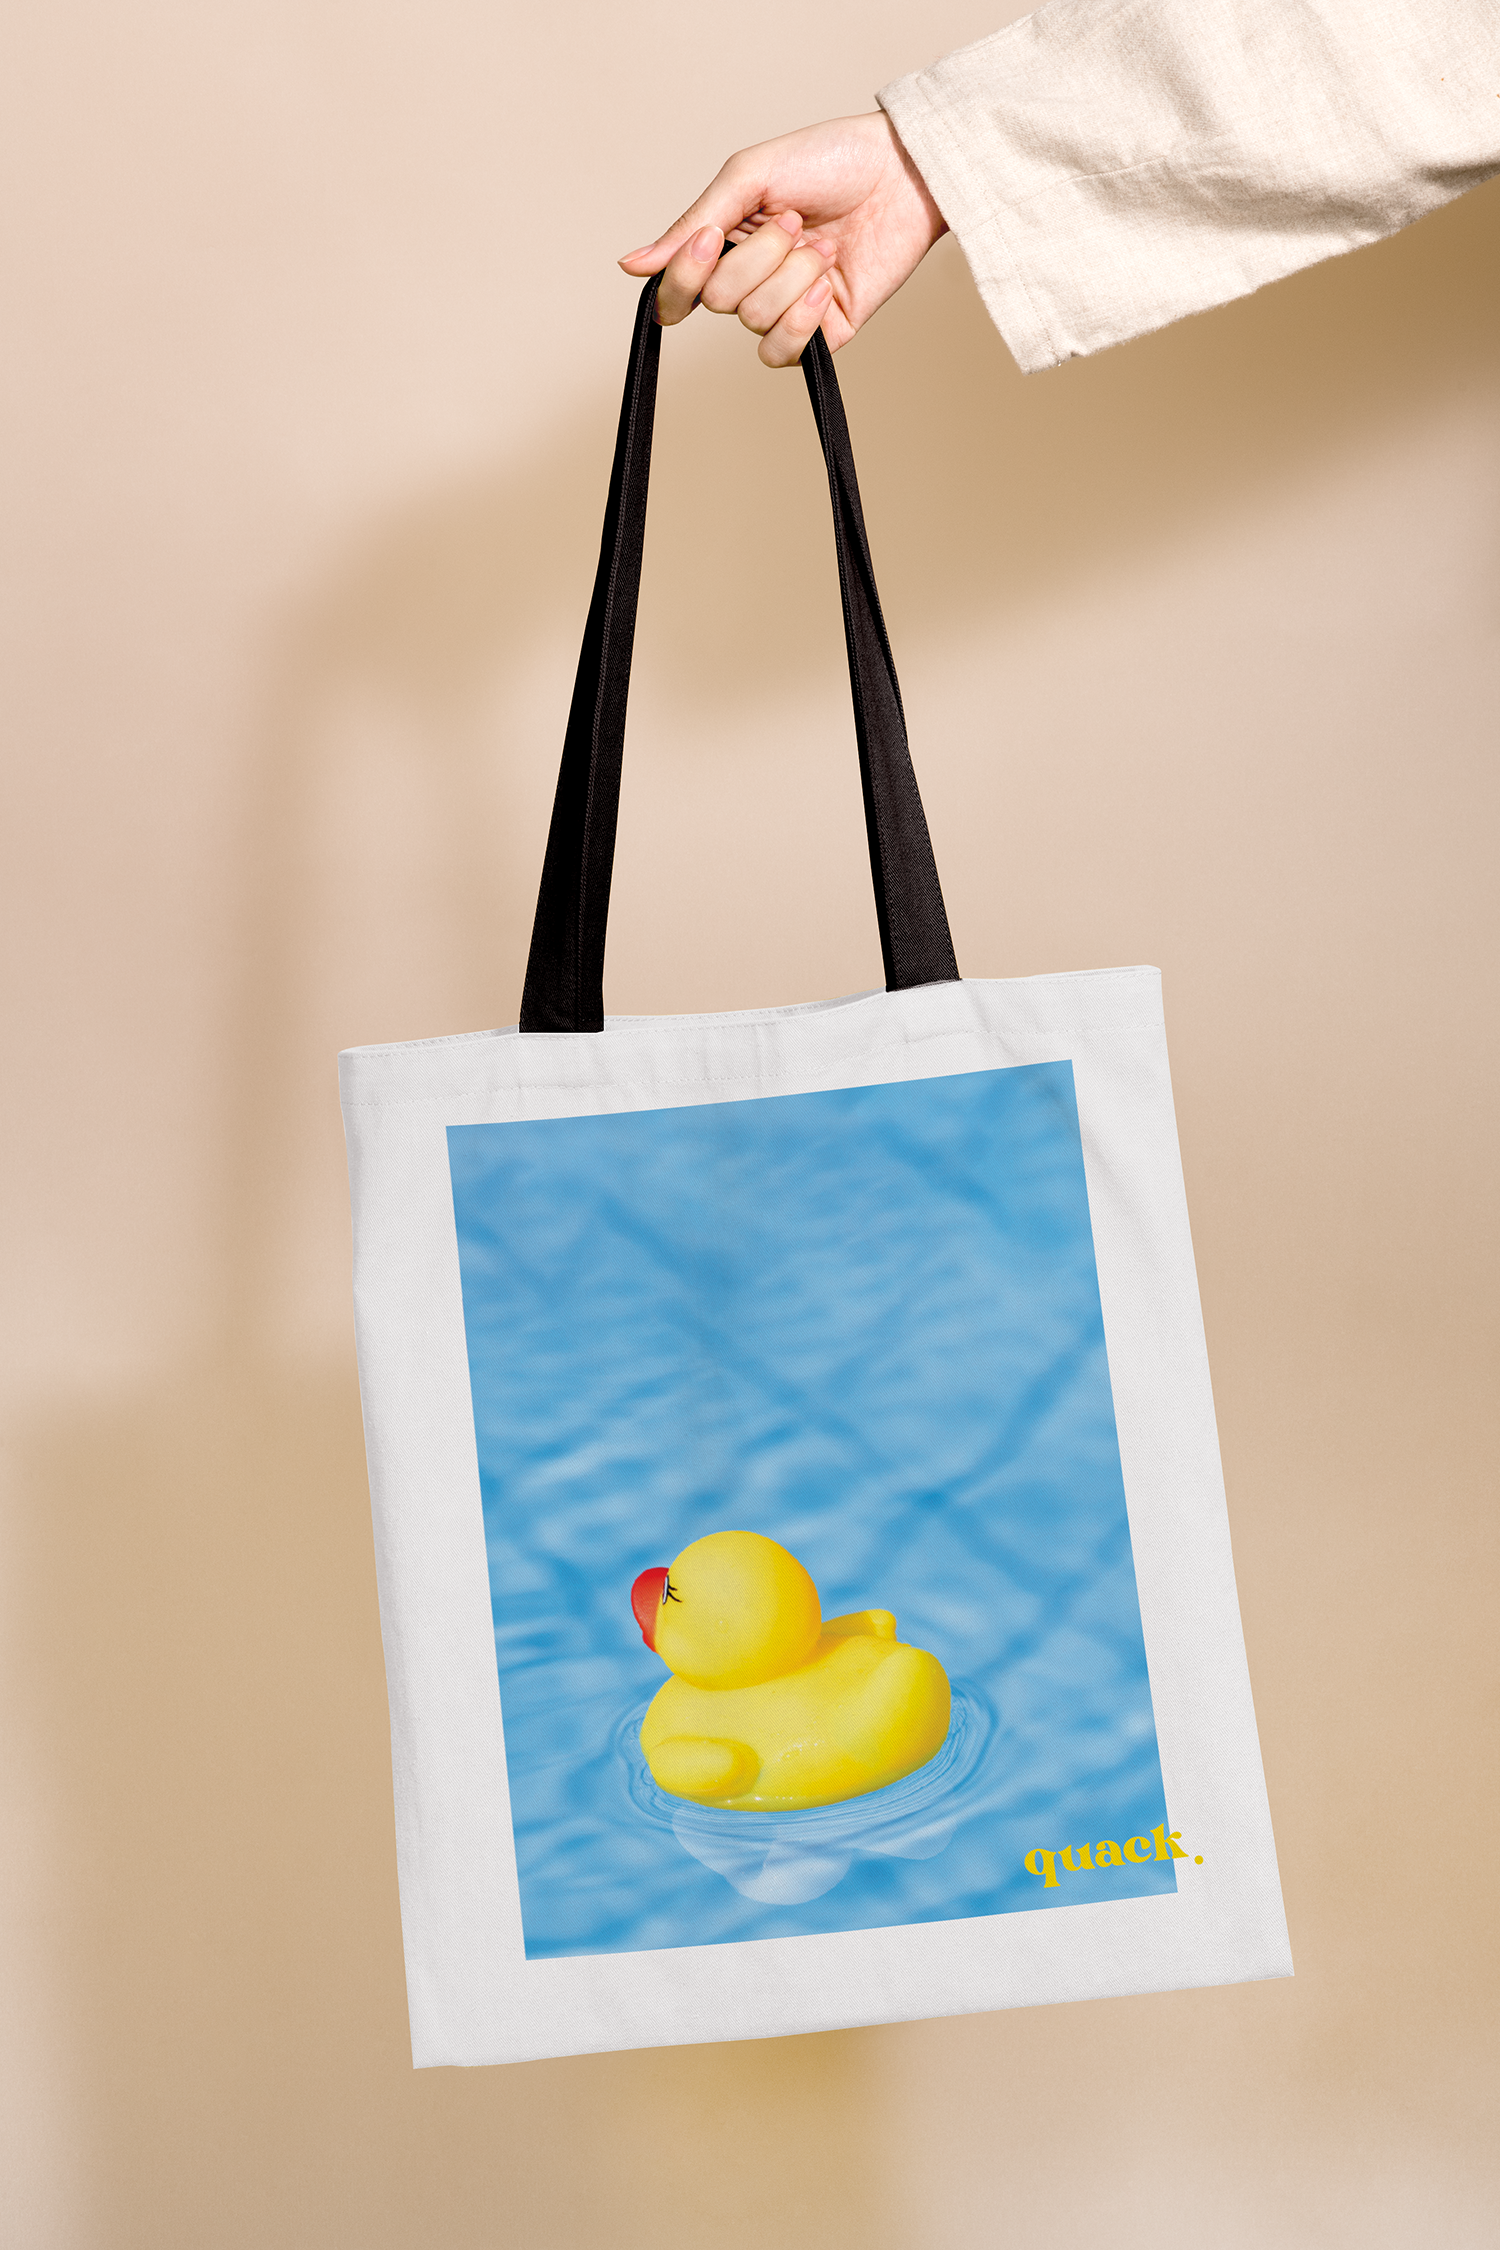 Quack Tote Bag